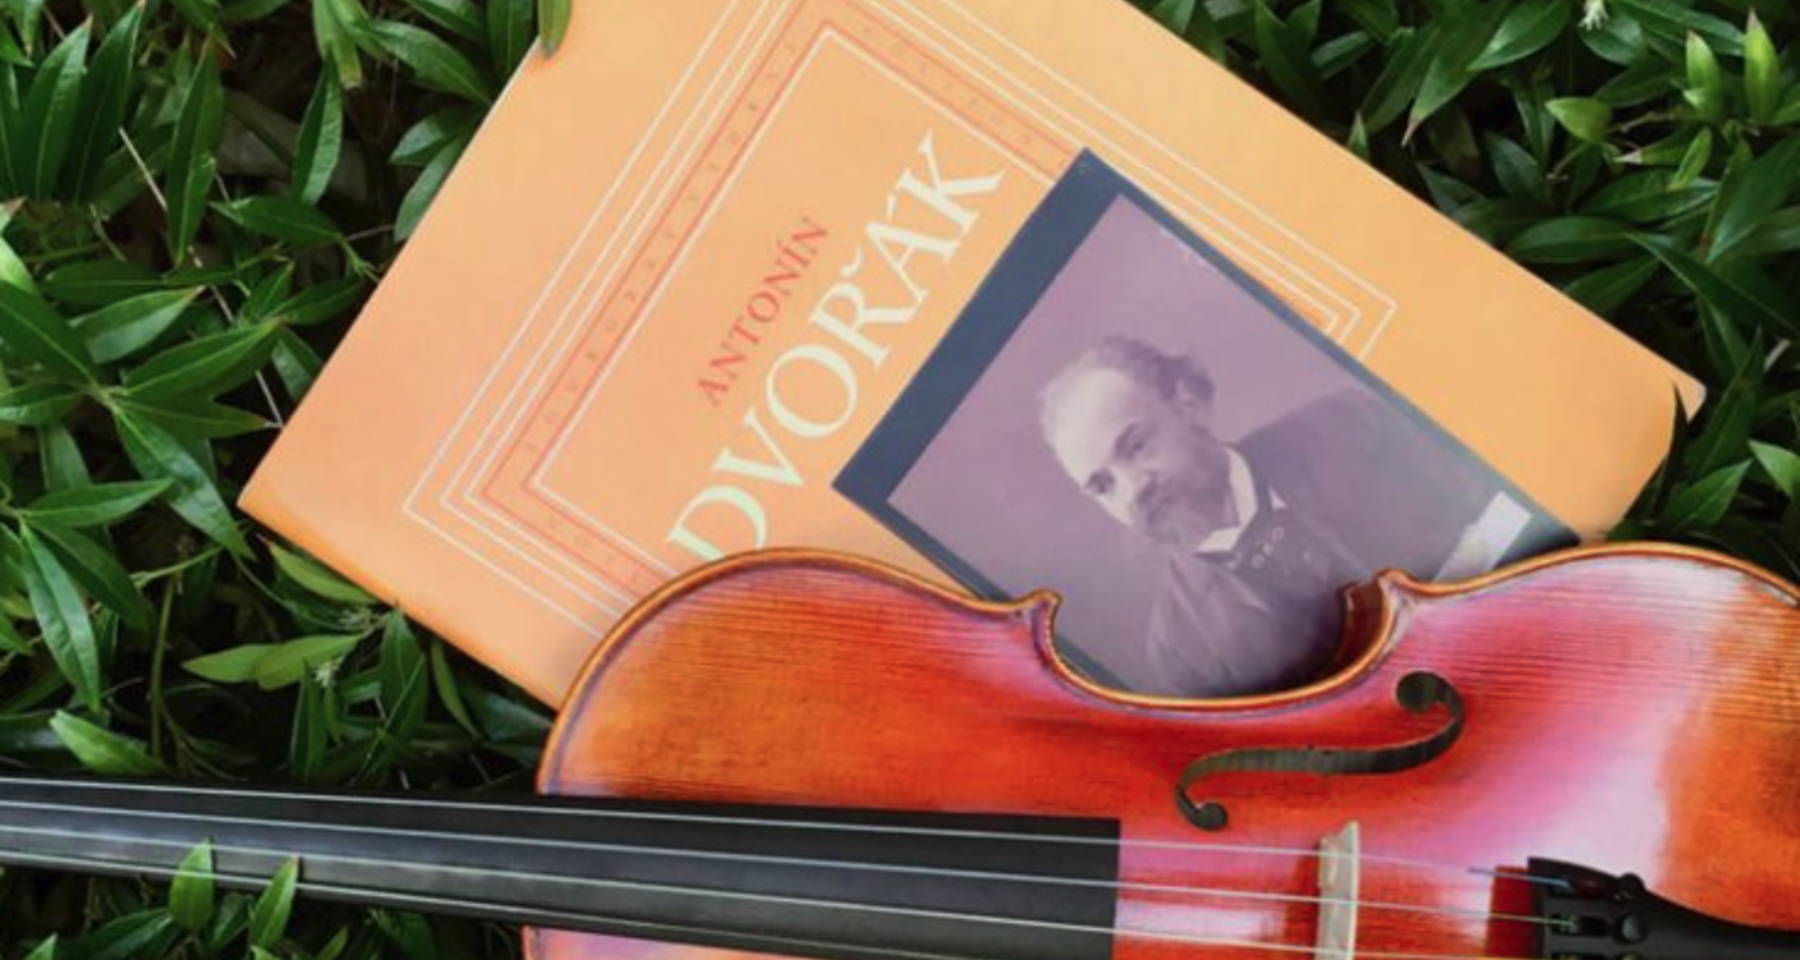 The Dvořák American Heritage Association Presents: Reflections on Dvořák’s New World Symphony